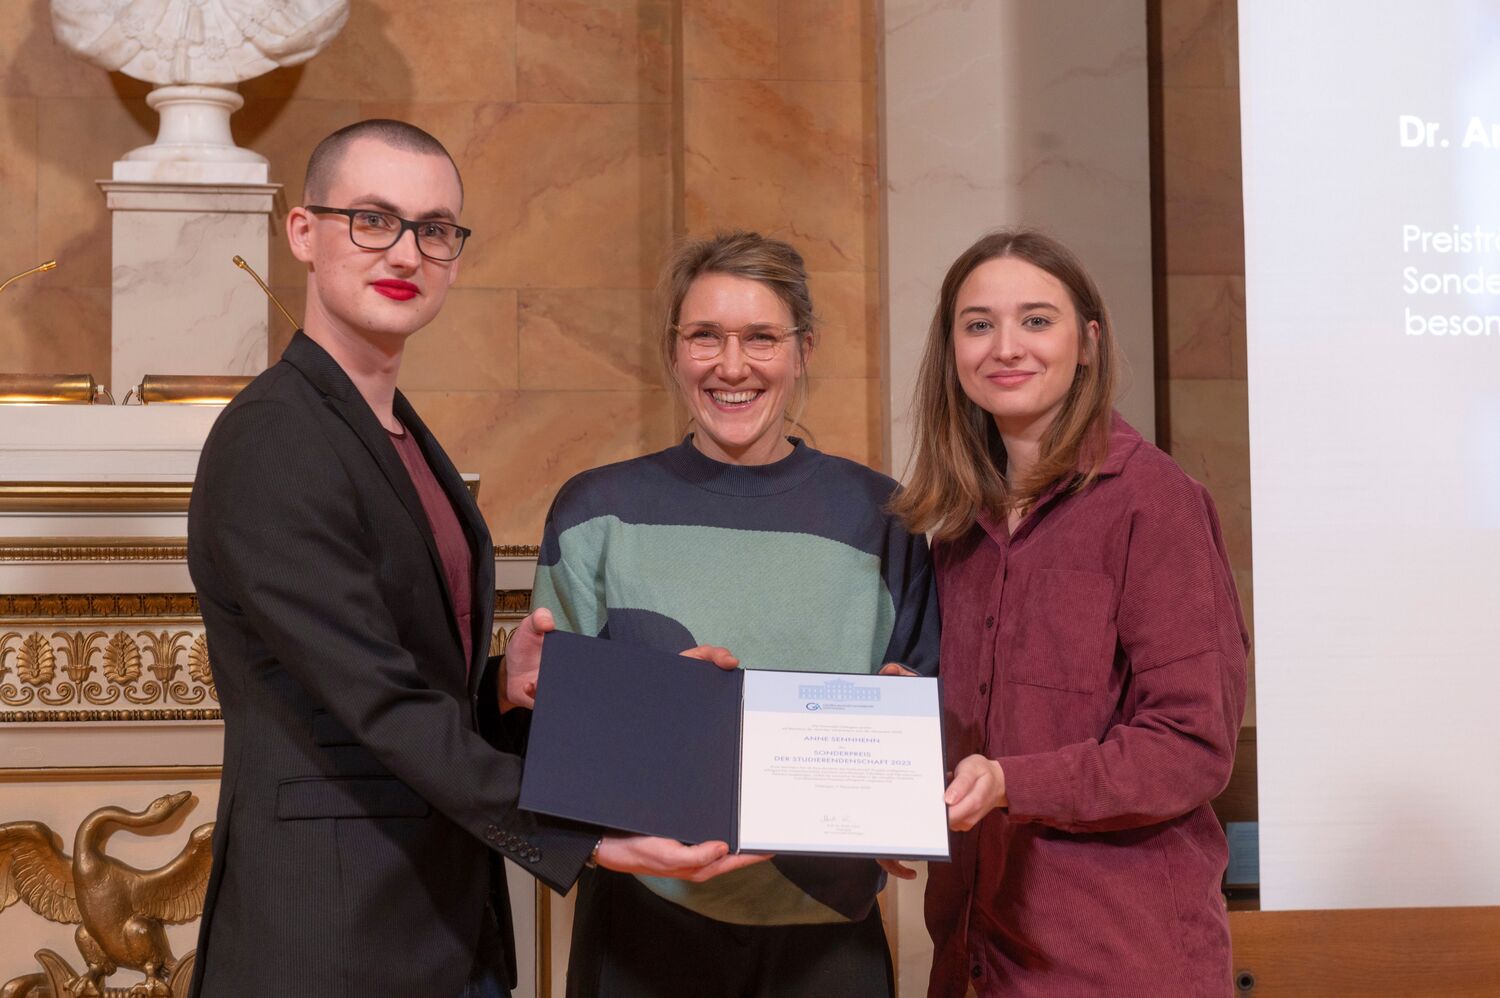 Sonderpreis der Studierendenschaft für besonderes Engagement: Preisträgerin Dr. Anne Sennhenn, links Paul Rouven Kiel, rechts Ann-Julie Blume (beide AStA).